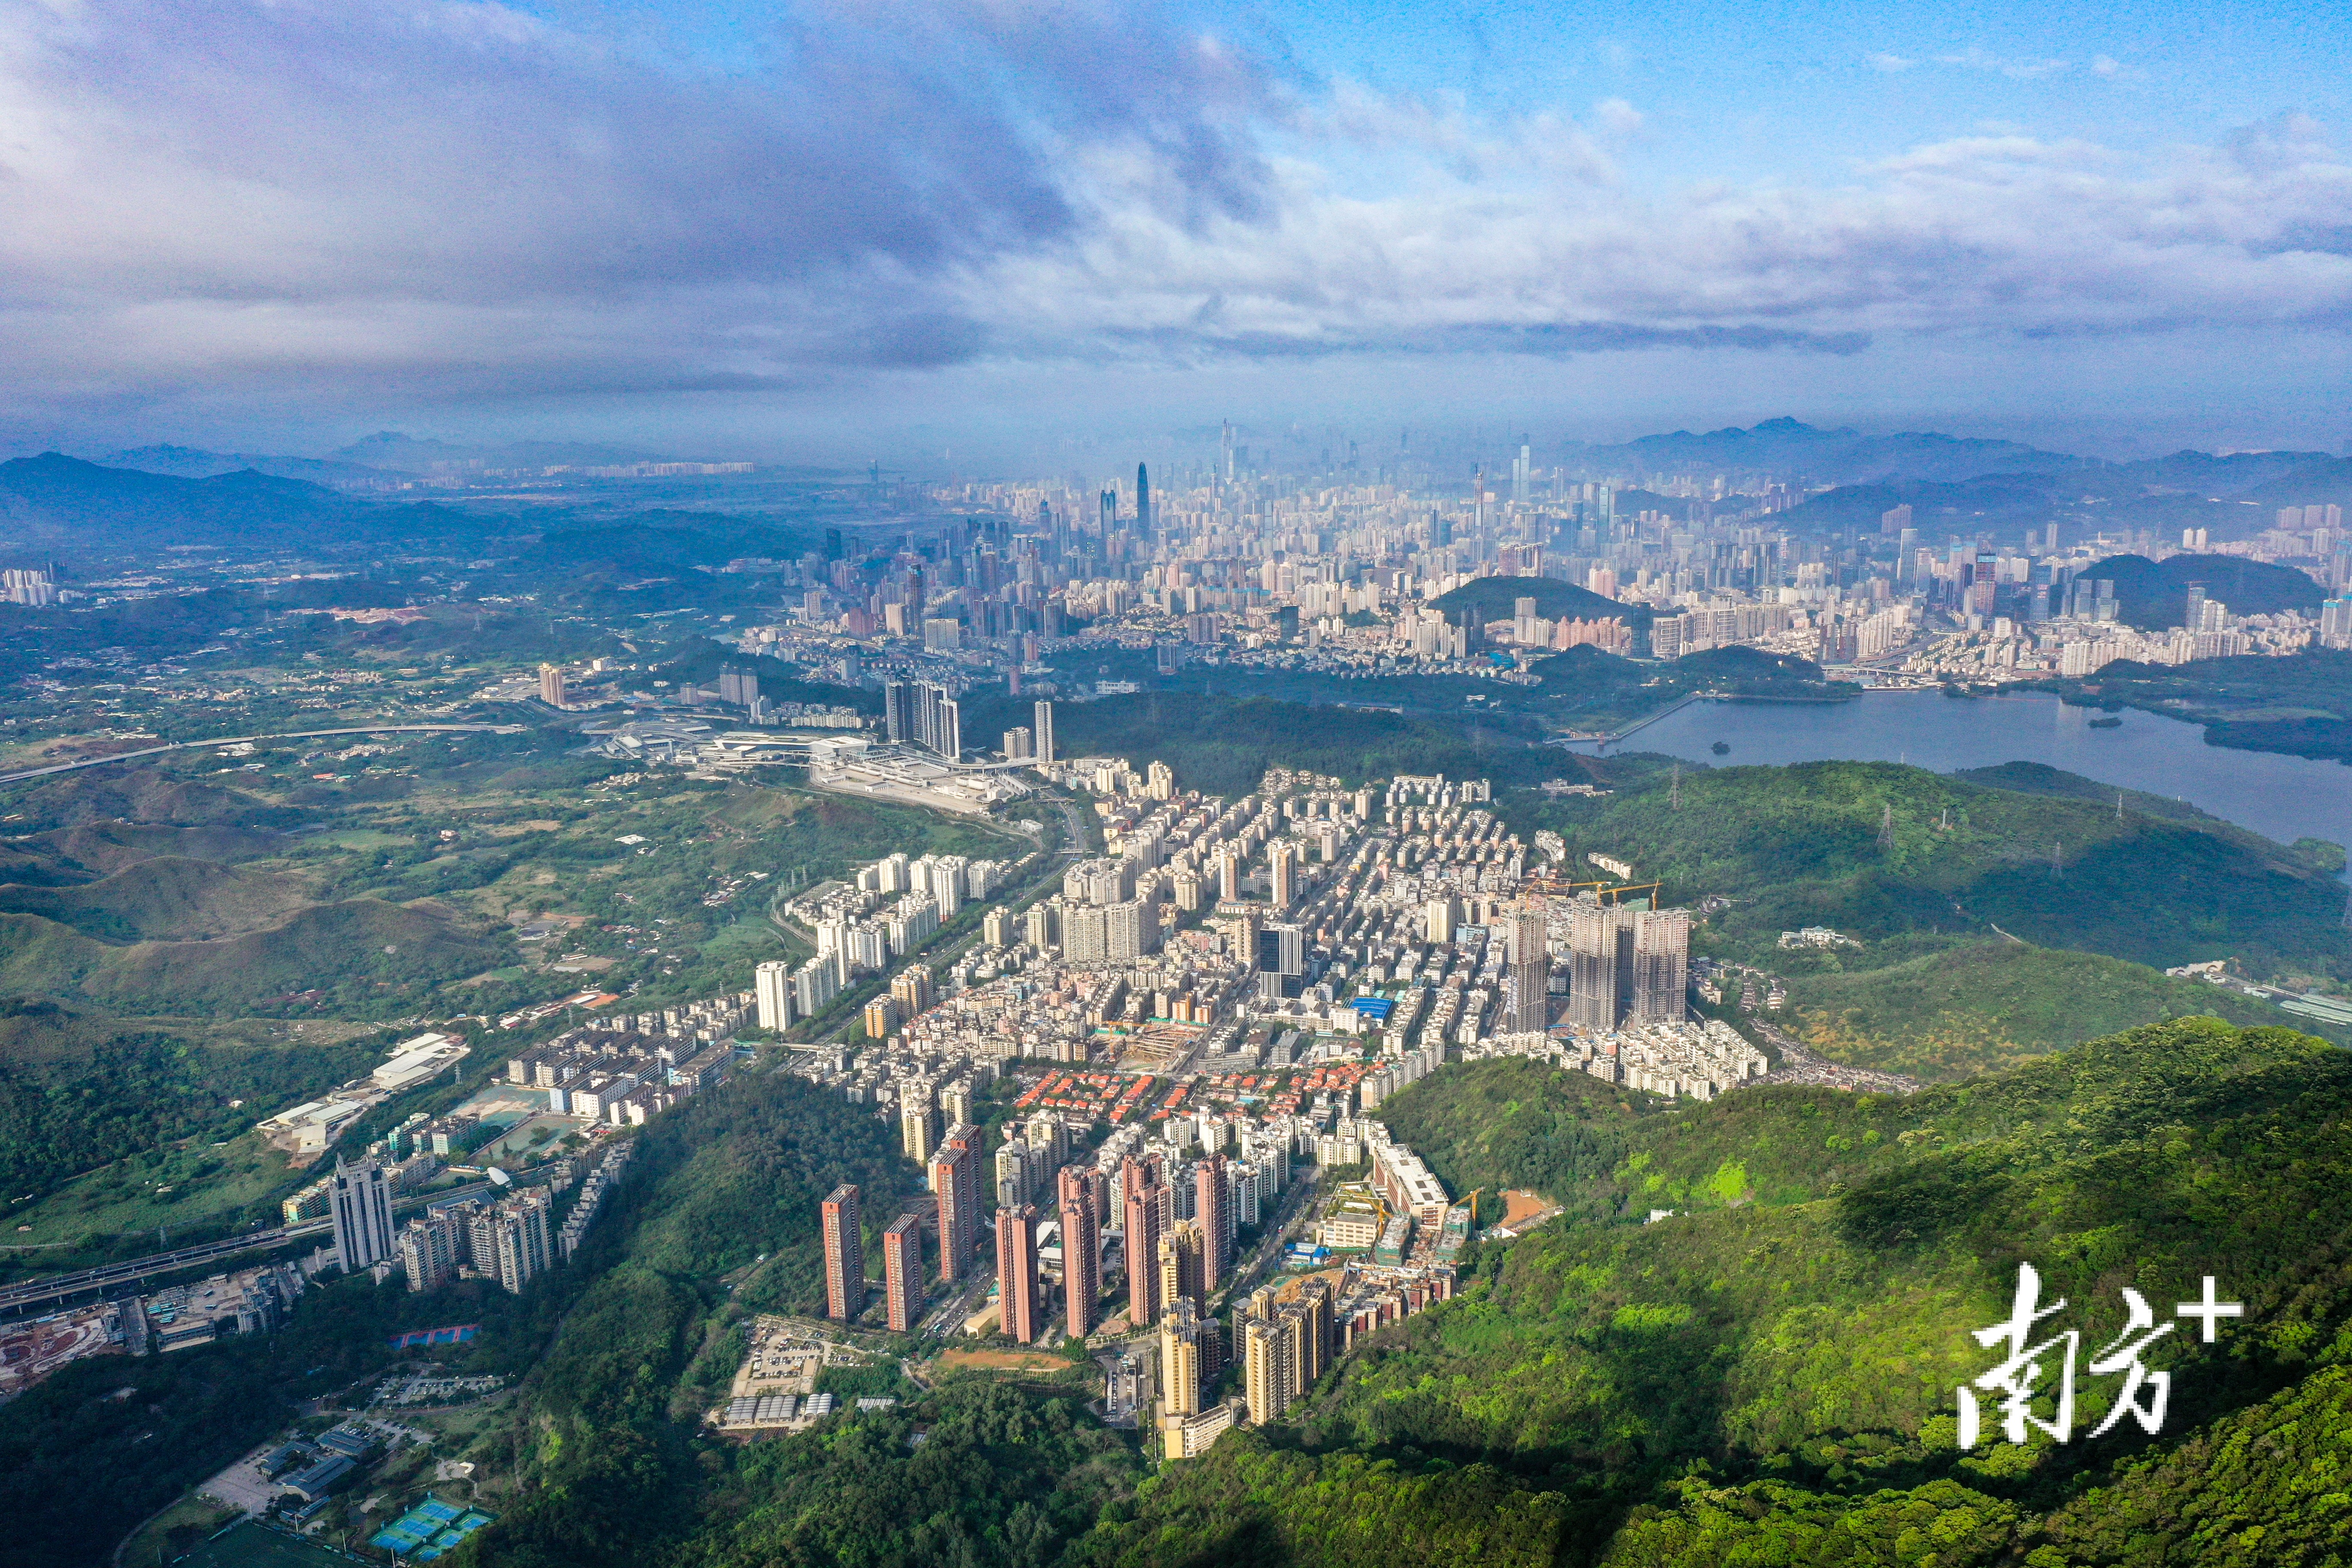  深圳正加快构建绿色低碳循环发展经济体系，全面提升城市应对气候变化整体能力和水平。南方日报记者 鲁力 摄